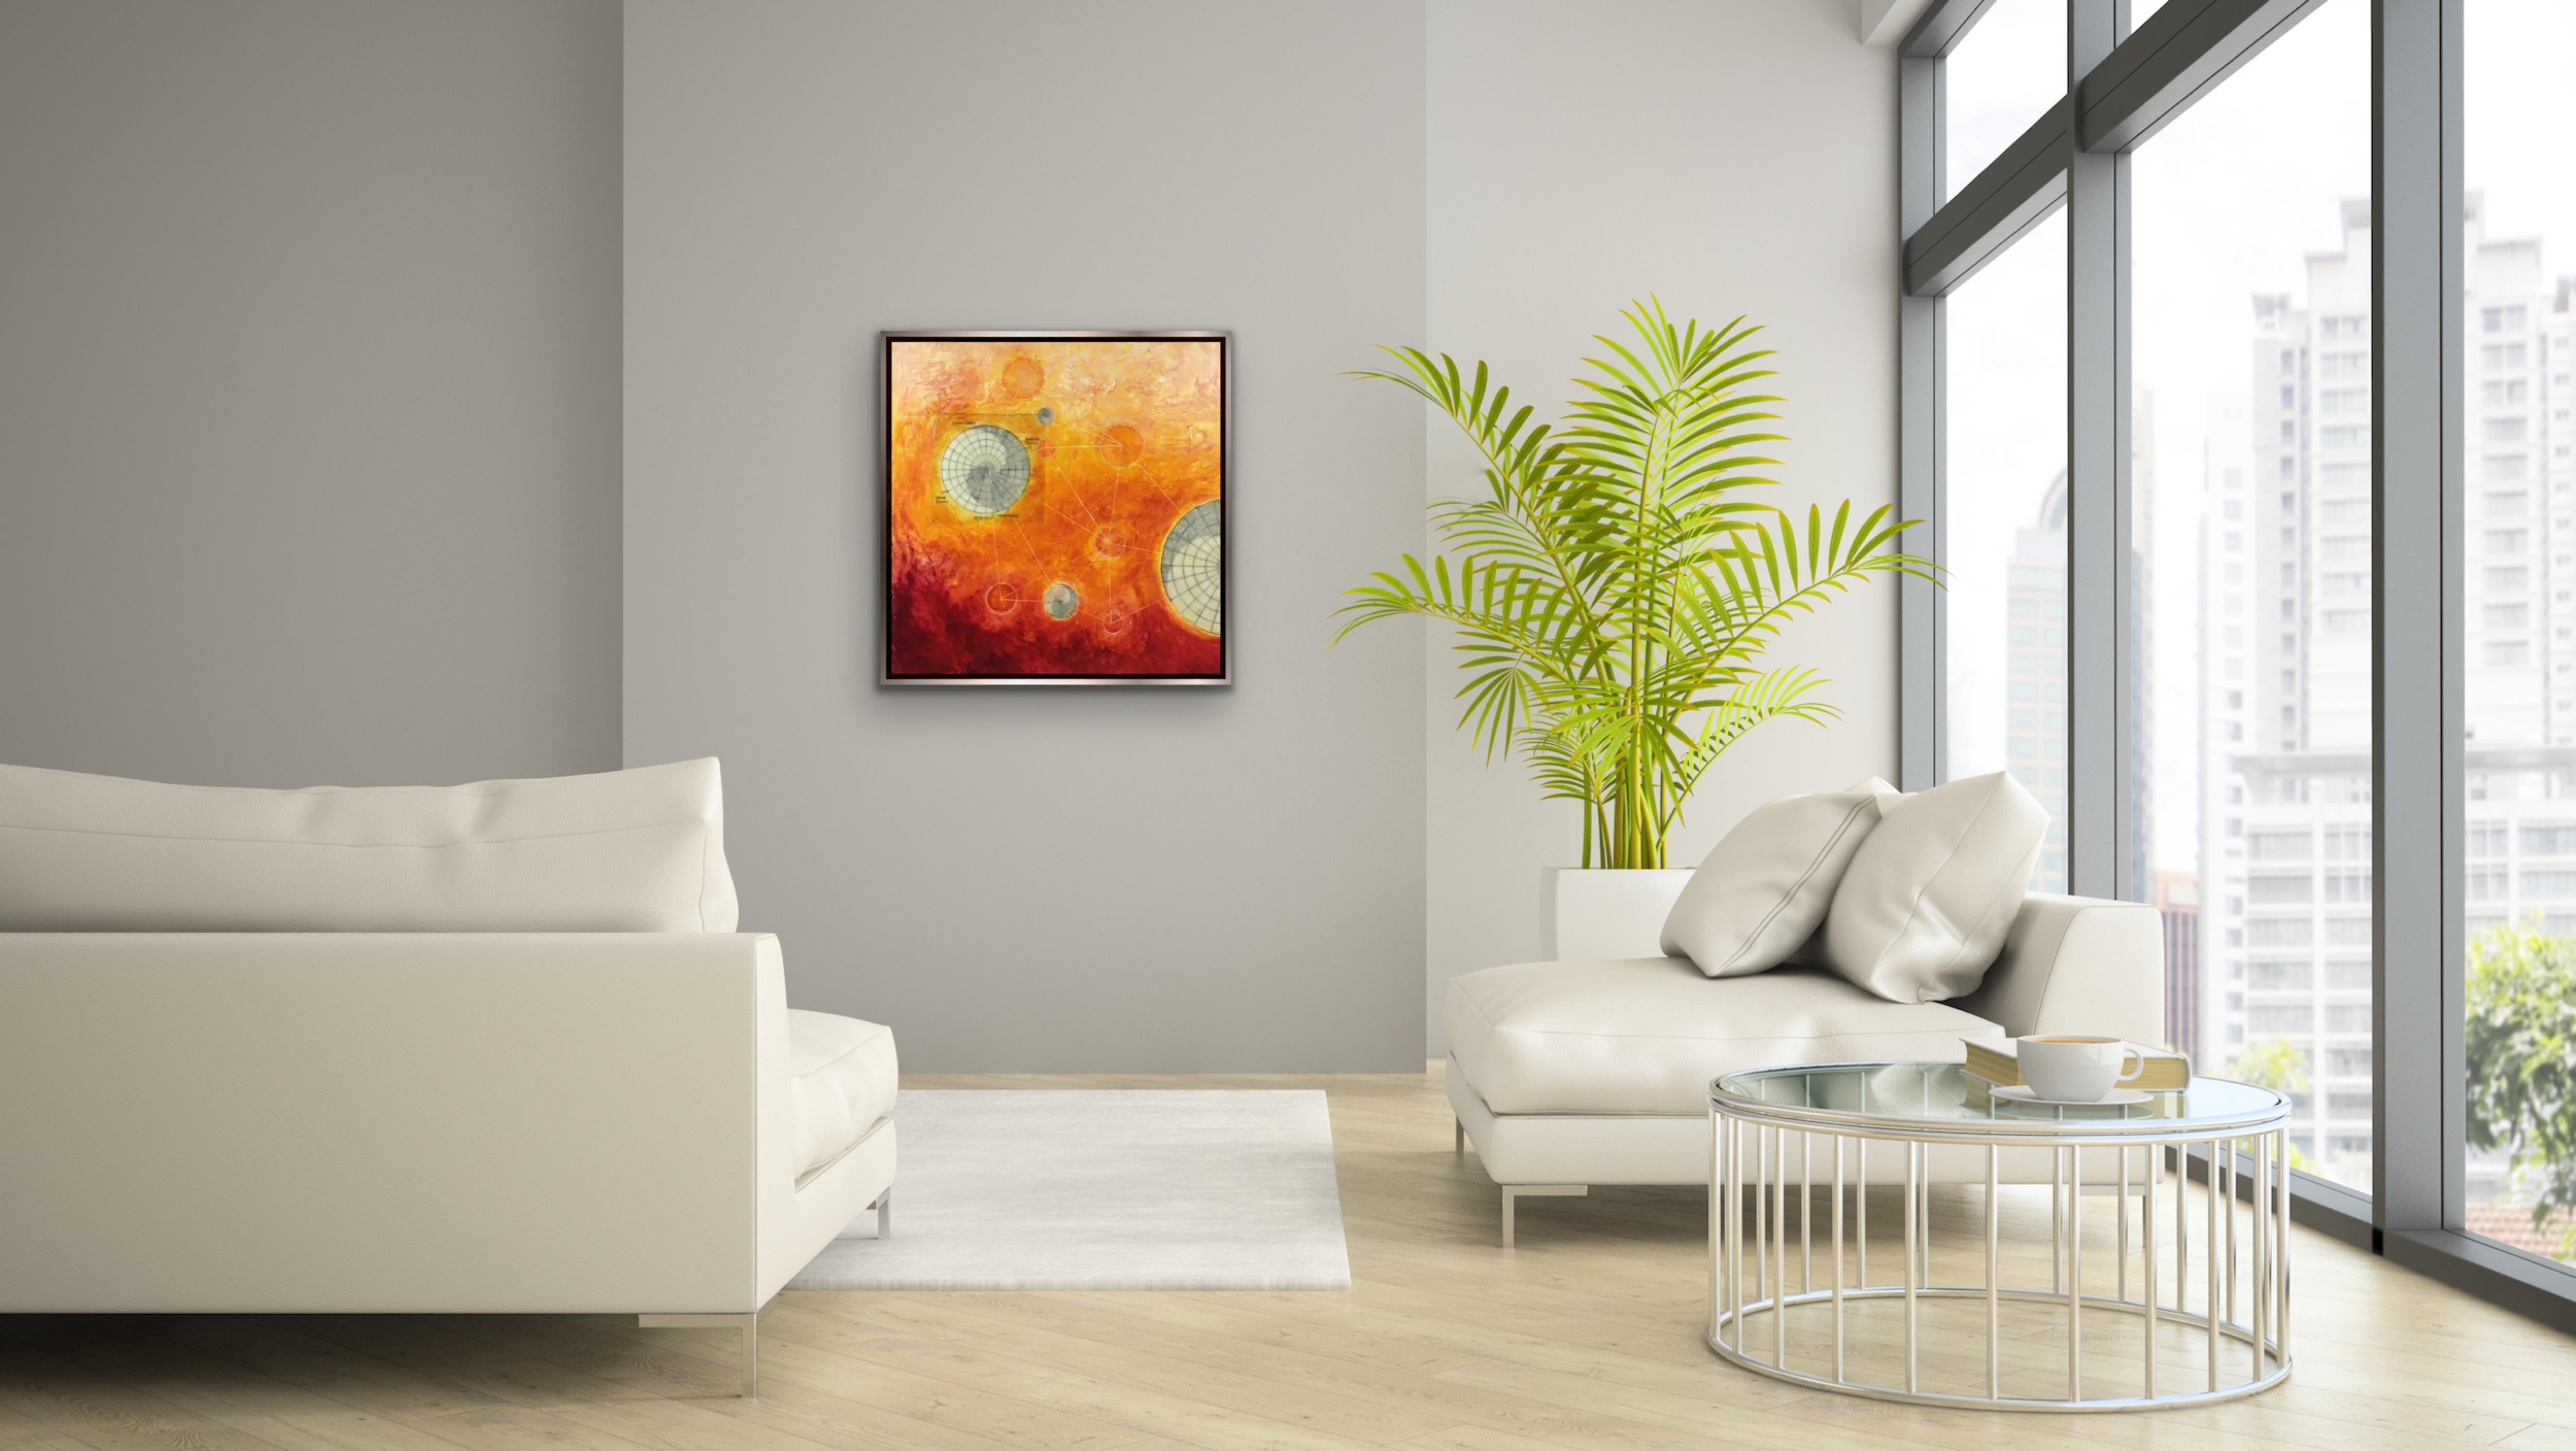 SOLSTICE 2019 (peinture abstraite, géométrique et à l'encaustique sur carton rouge et orange) - Abstrait Painting par Susan E. Squires